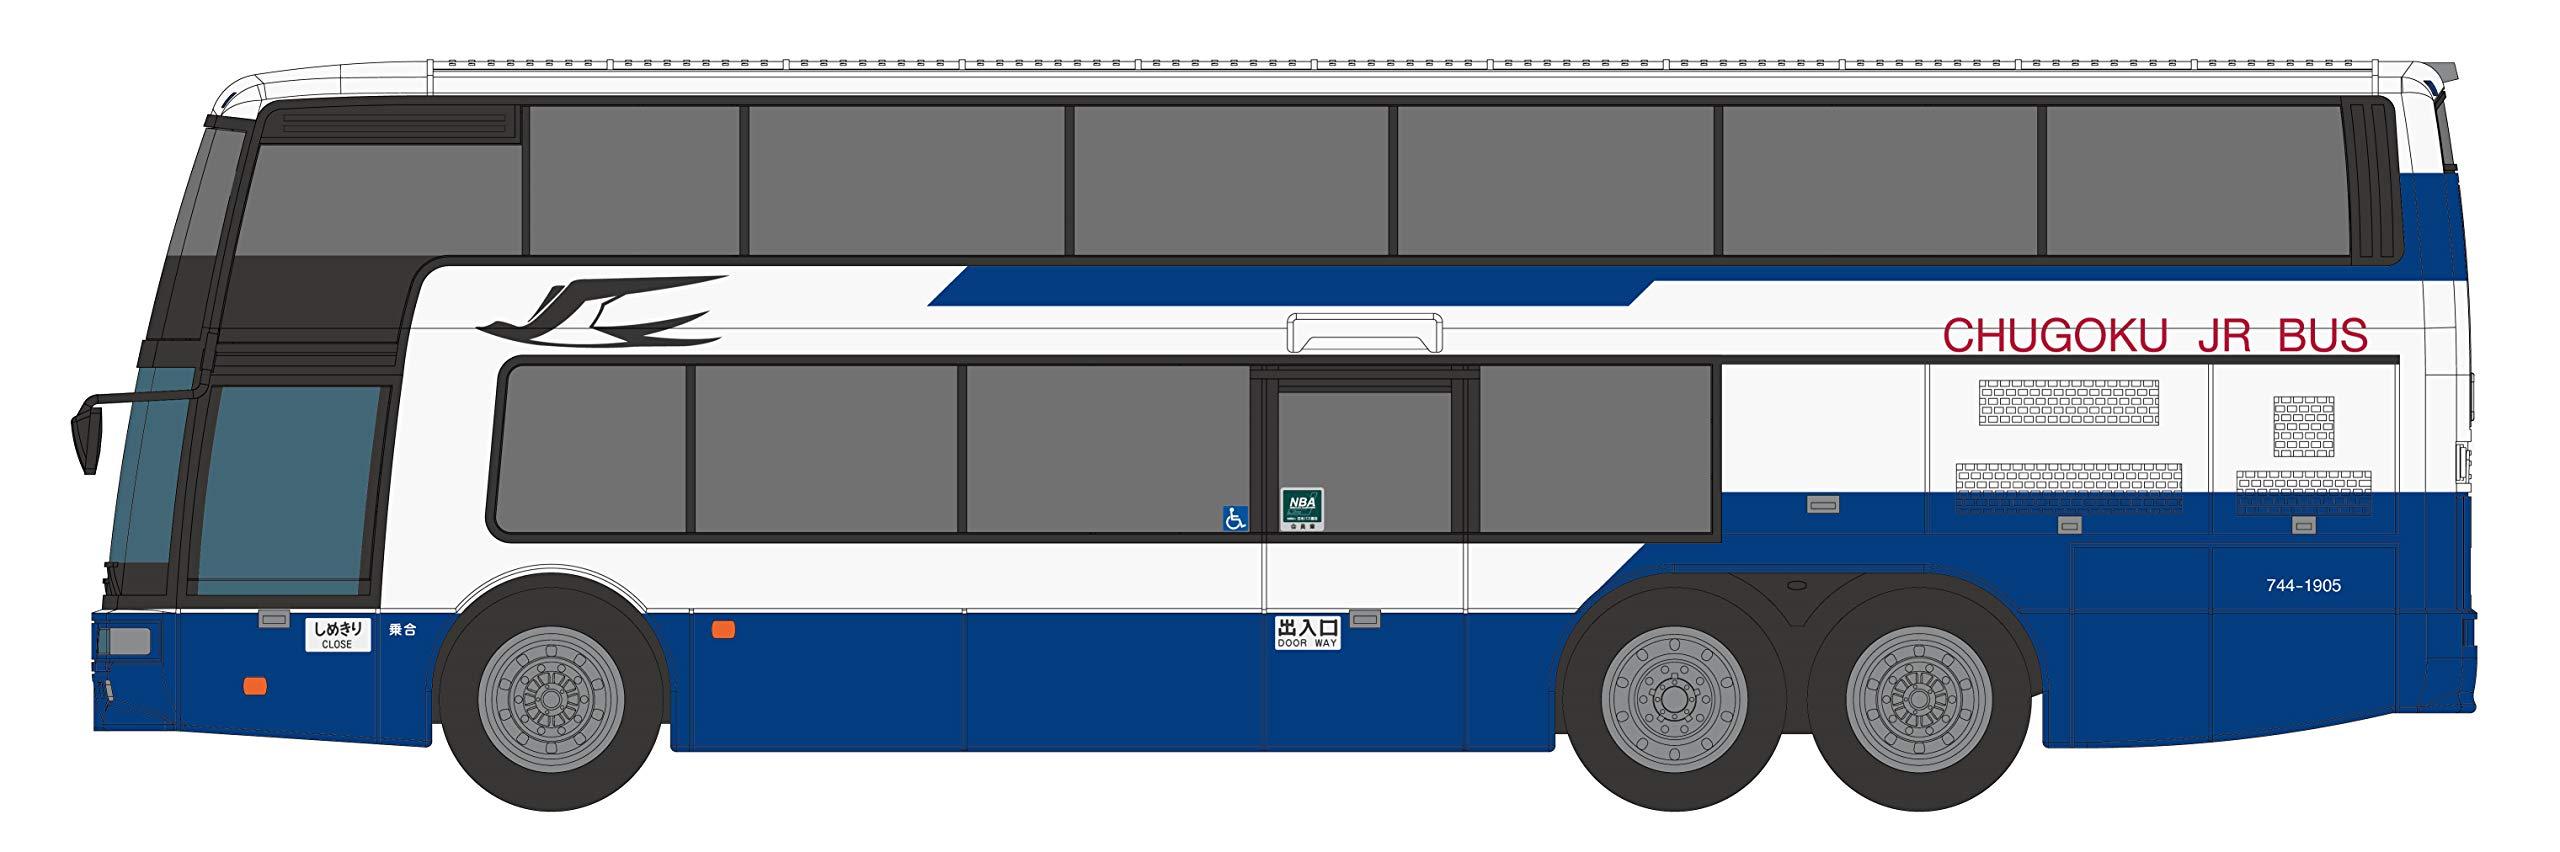 ポポンデッタ 1/150 バスシリーズ エアロキング 中国ジェイアールバス株式会社 標準塗装 (744-1905) 8307 ジオラマ商品